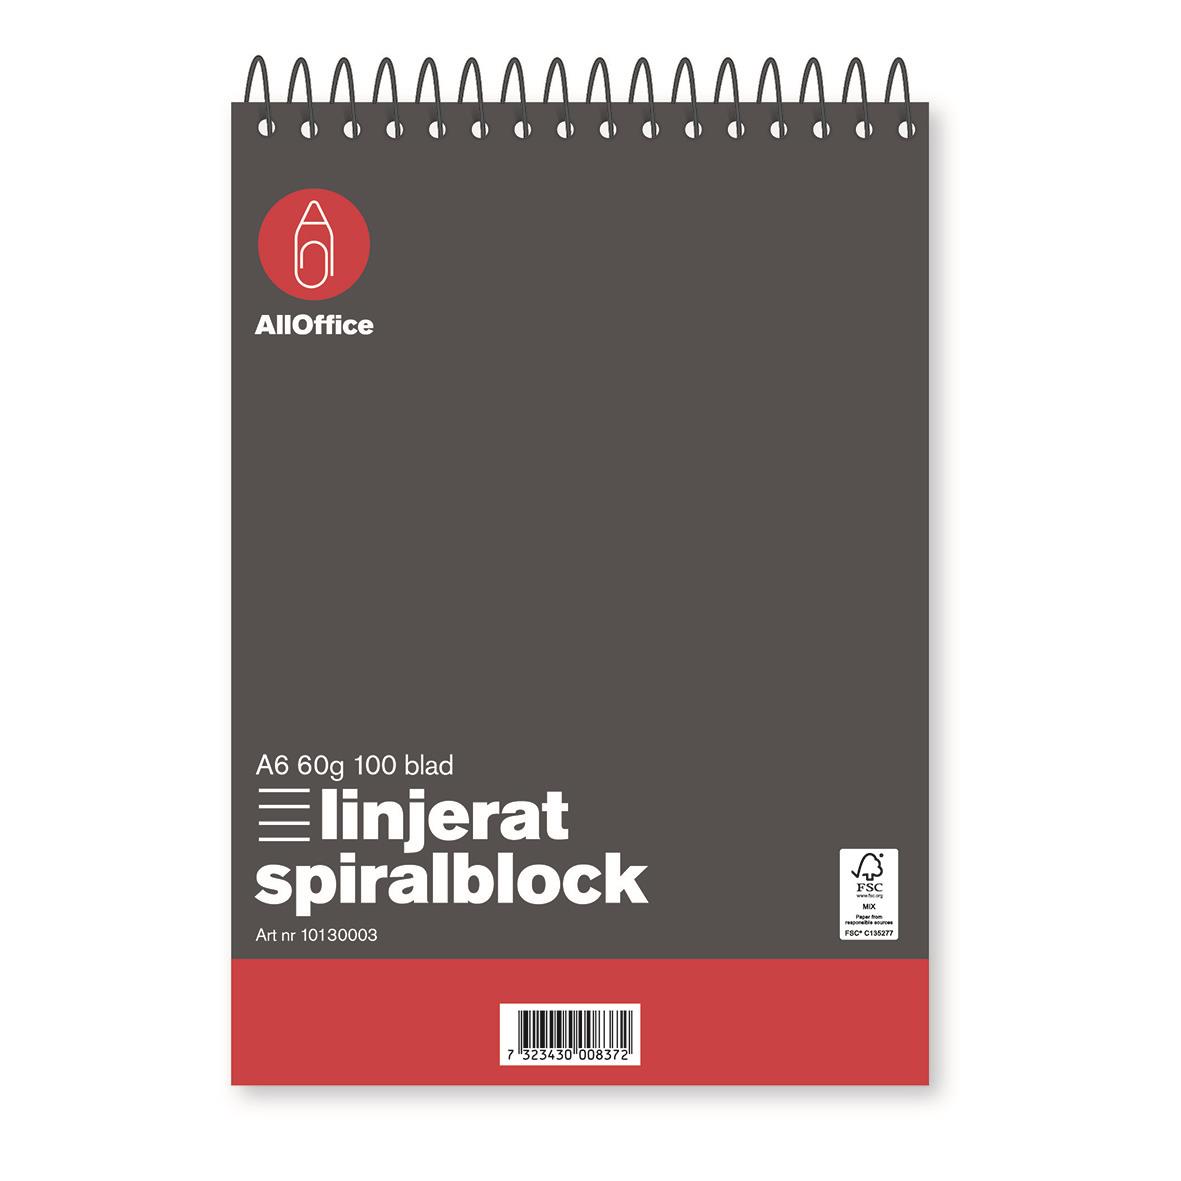 Spiralblock AllOffice 60g A6 100 blad